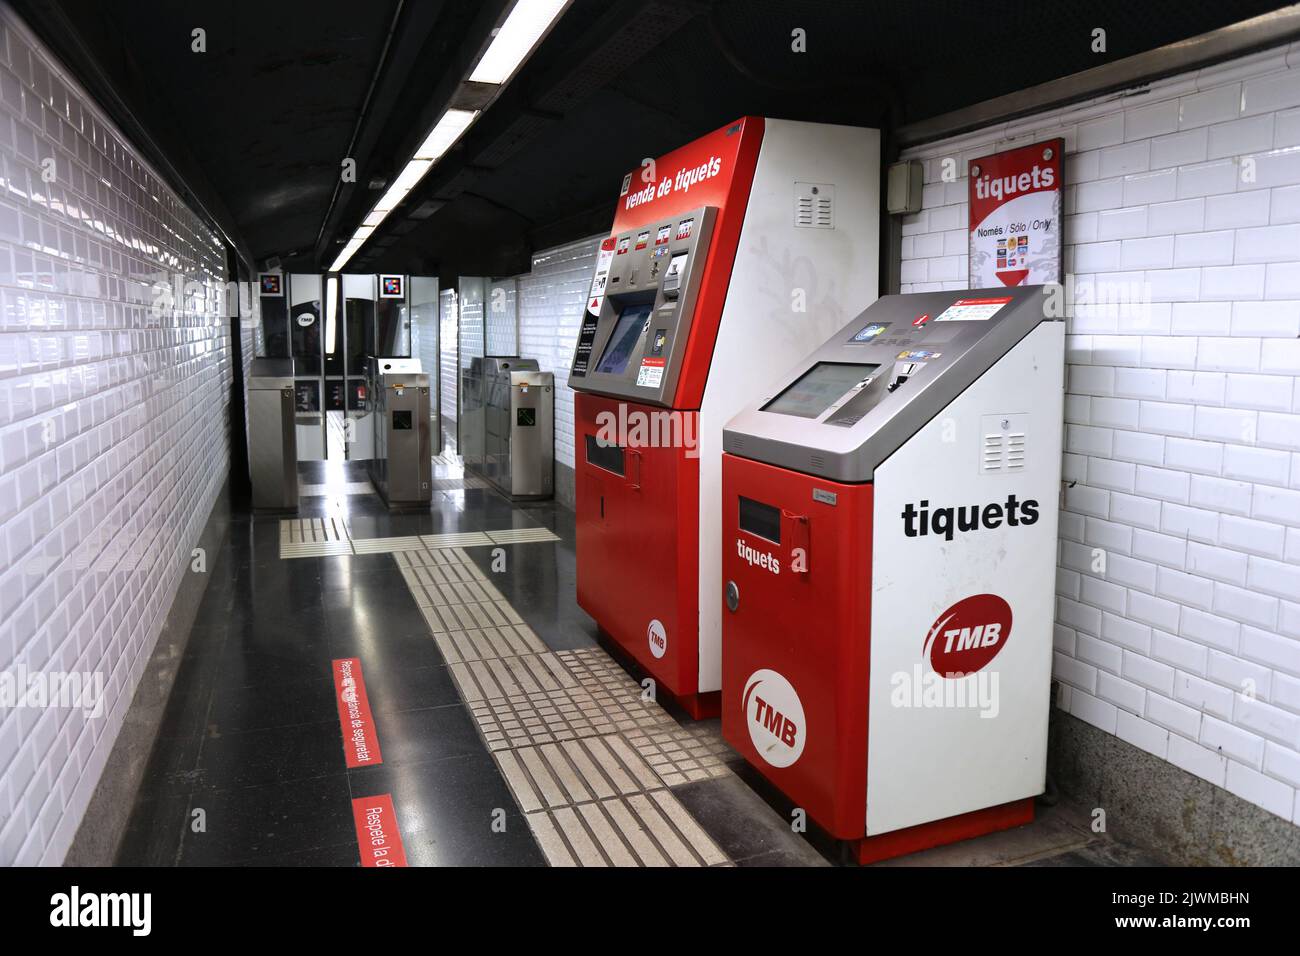 BARCELONE, ESPAGNE - 6 OCTOBRE 2021 : distributeurs de billets dans le métro de Barcelone en Espagne. Le métro de Barcelone est un réseau de chemin de fer électrifié à transit rapide. Banque D'Images